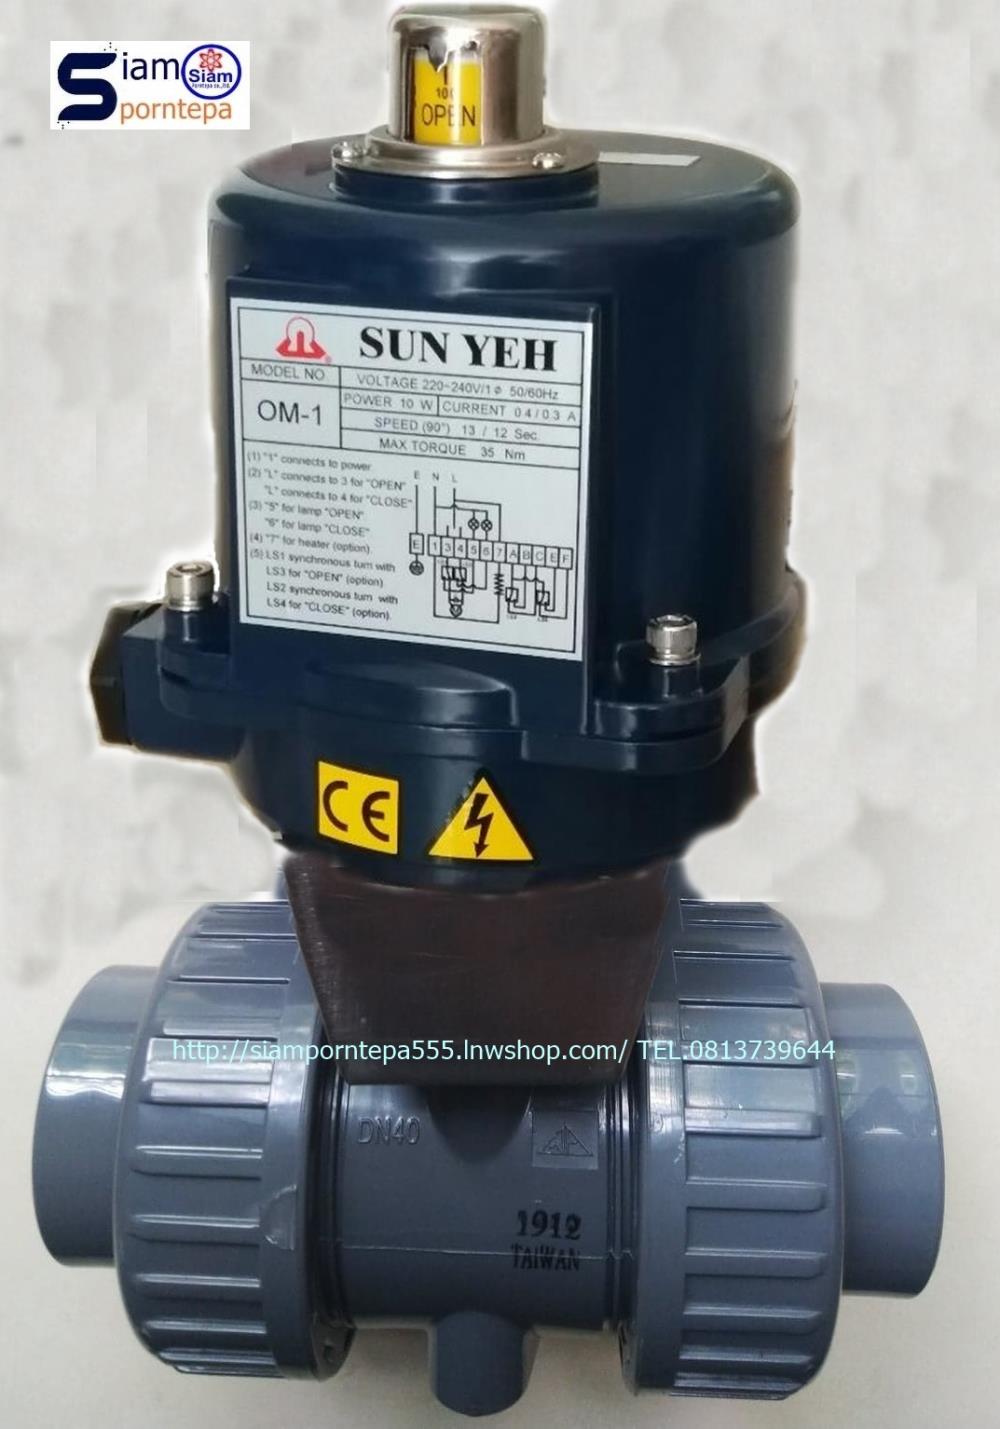 UPVC valve 1-1/2" Sunyeh electric actuator หัวขับไฟฟ้า size 1-1/2" ให้งานร่วมกับ Actuator ทนทาน ใช้งานคุ้ม ส่งฟรีทั่วประเทศ,UPVC valve 1-1/2" Sunyeh electric actuator หัวขับไฟฟ้า size 1-1/2",UPVC valve 1-1/2" Sunyeh electric actuator หัวขับไฟฟ้า size 1-1/2" ราคาถูก ทนทาน,UPVC valve 1-1/2" Sunyeh electric actuator หัวขับไฟฟ้า size 1-1/2"ส่งฟรีทั่วประเทศ,UPVC valve Sunyeh electric actuator,Pumps, Valves and Accessories/Valves/Butterfly Valves